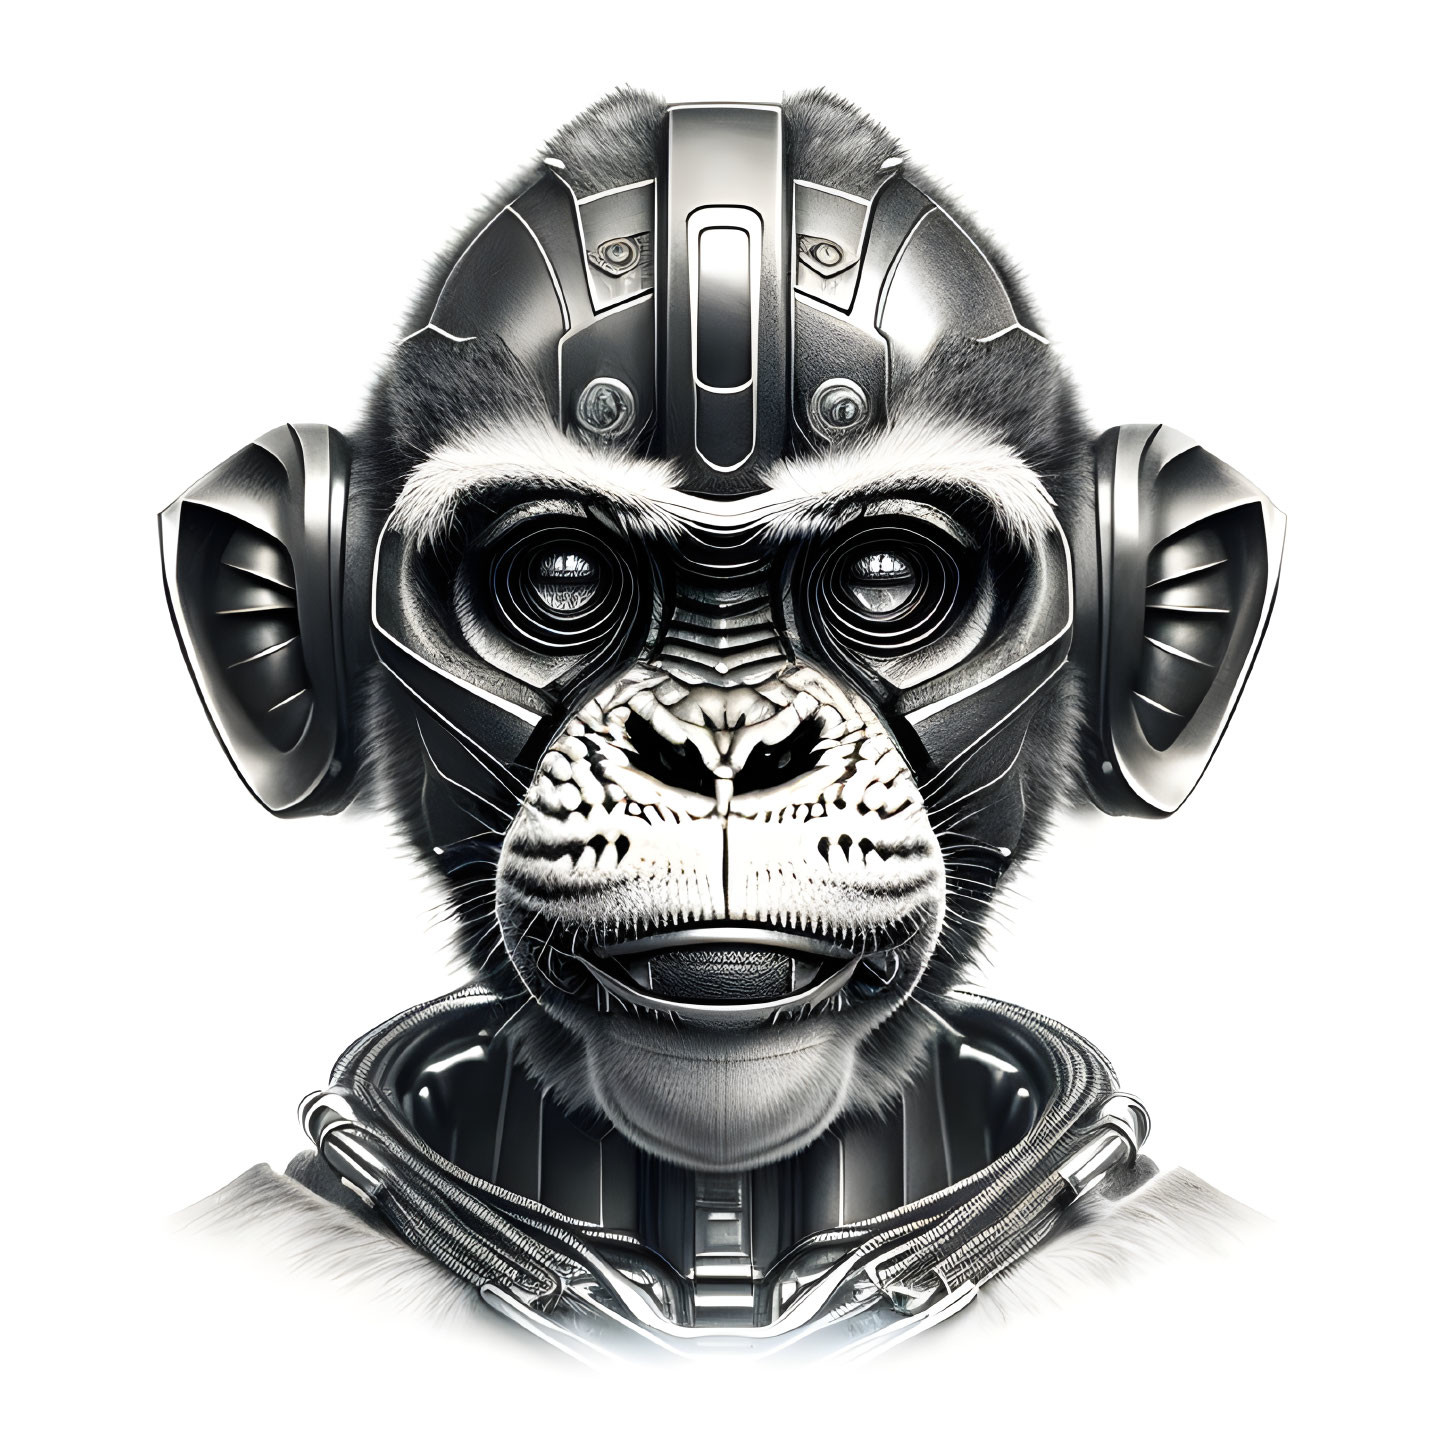 Chimpanzee digital illustration with futuristic elements in monochromatic color scheme